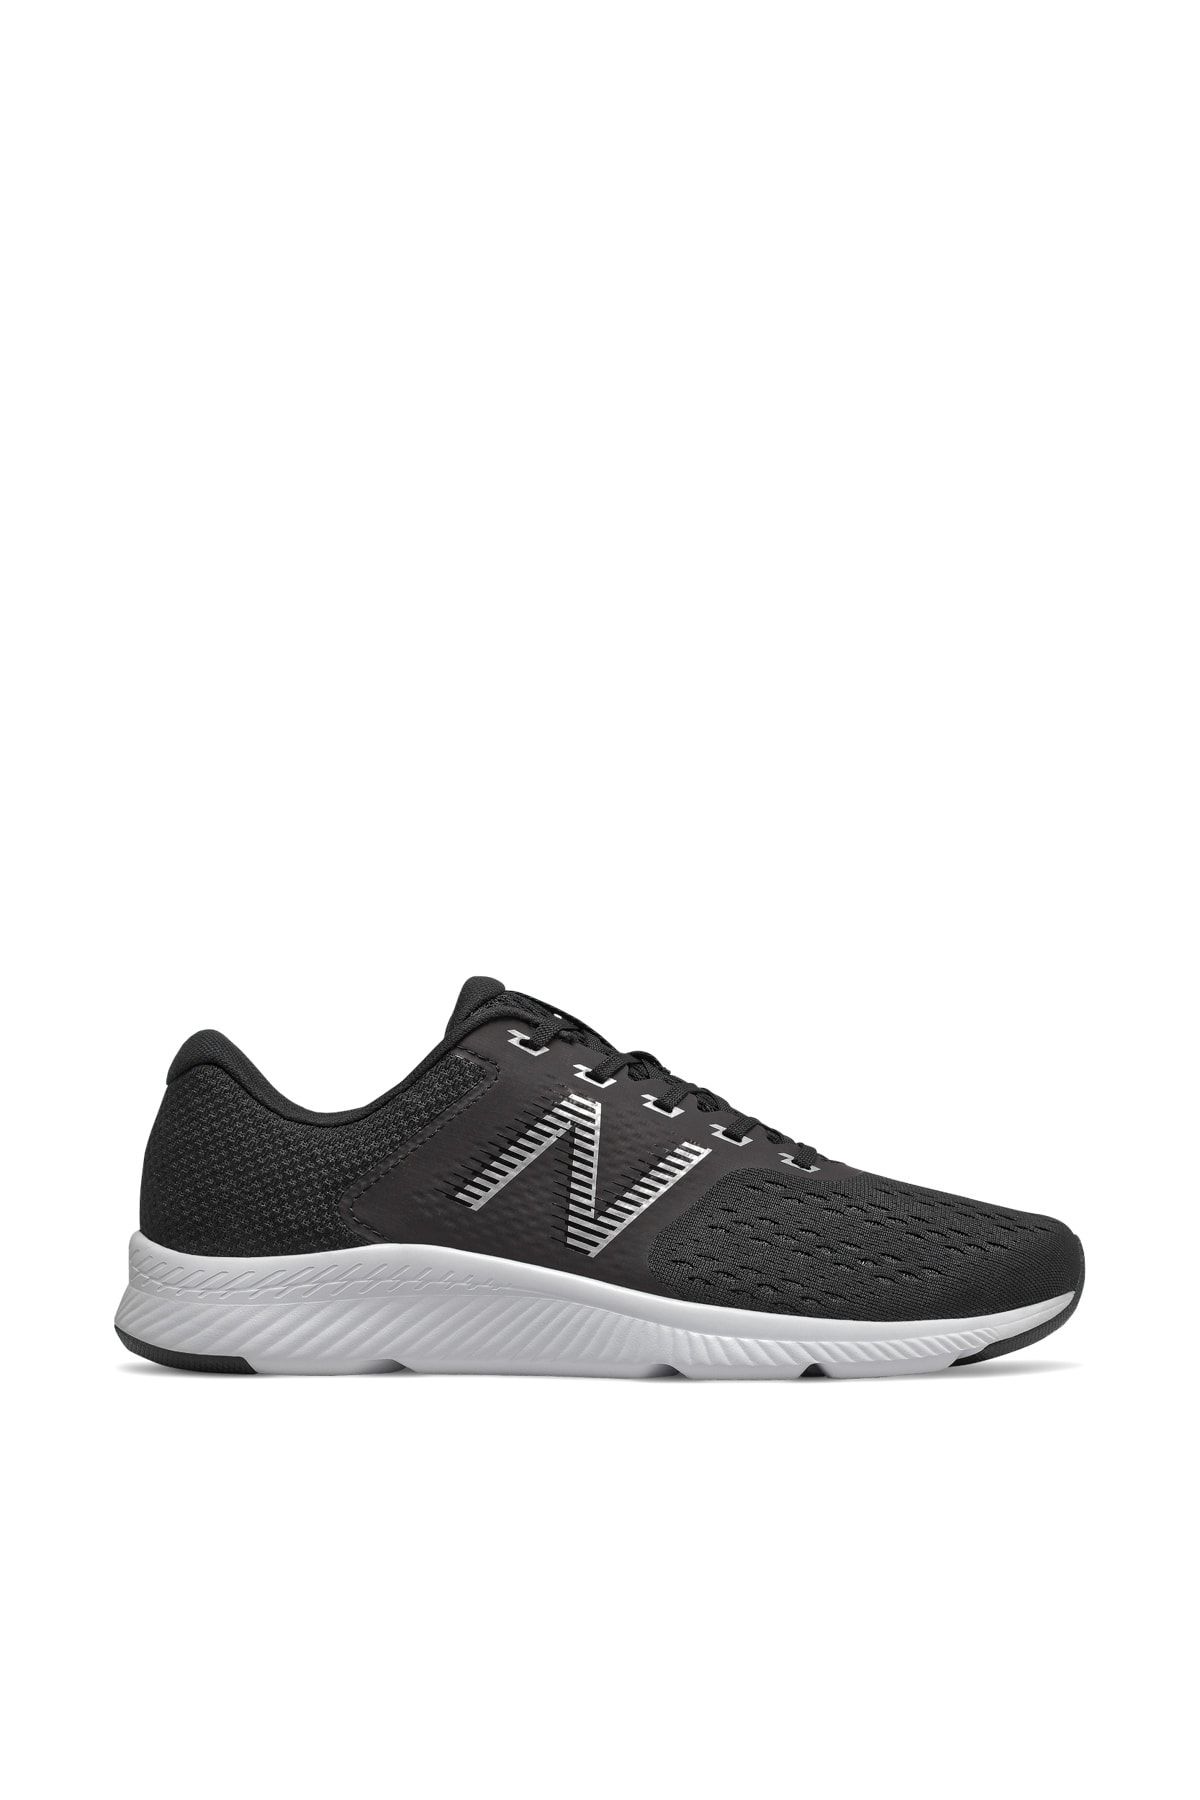 New Balance Erkek Yetişkin MDRFT Siyah Koşu Ayakkabısı 5002579298